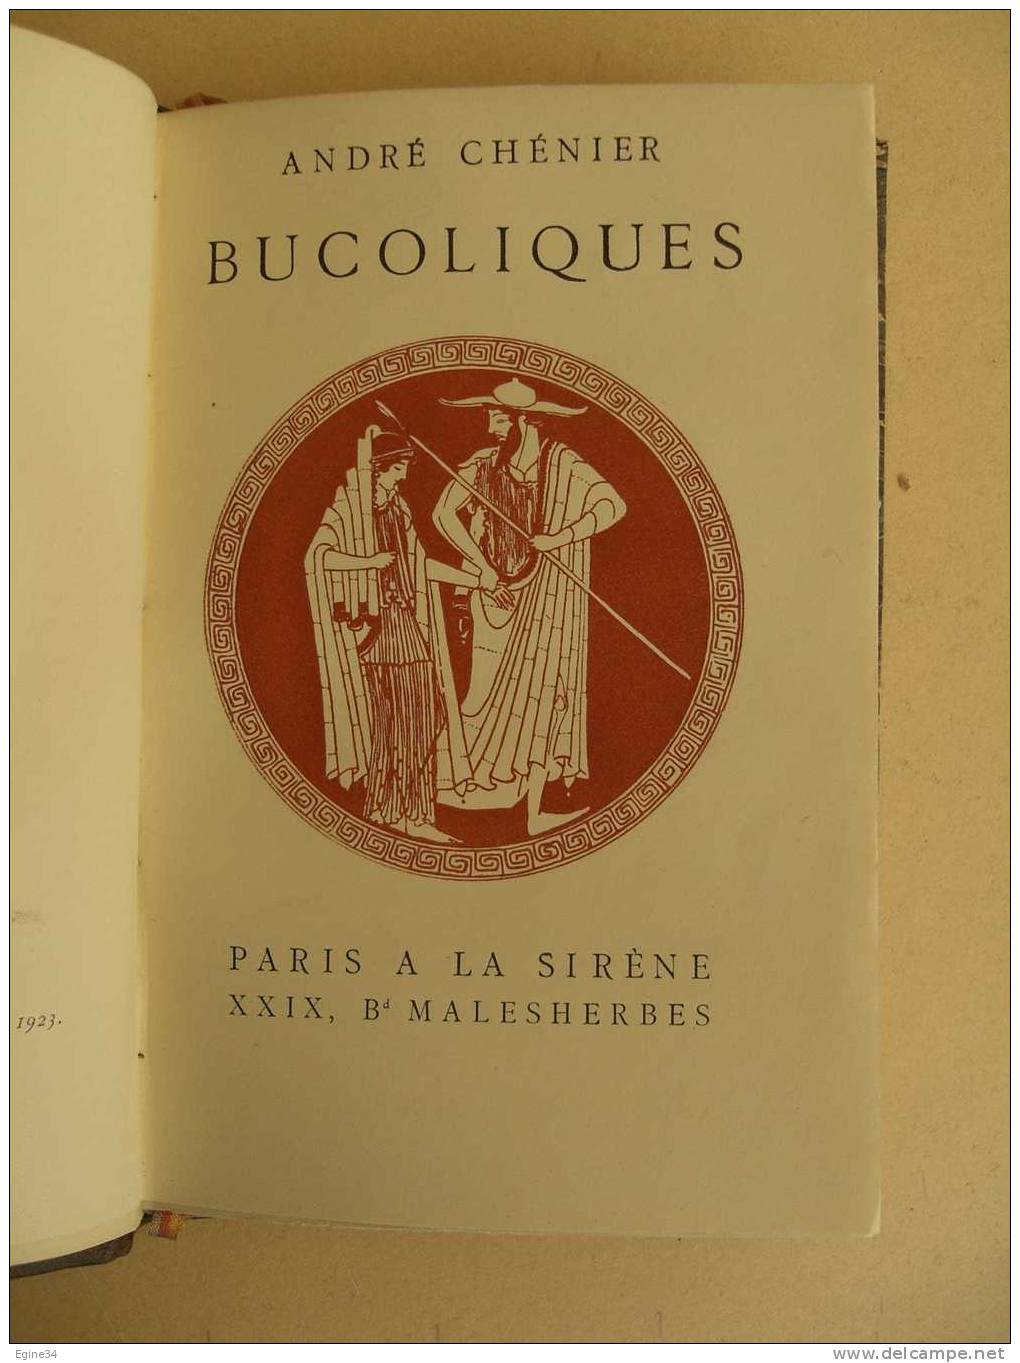 ANDRE CHENIER  -  LES BUCOLIQUES  -  1923  - Illustré - French Authors